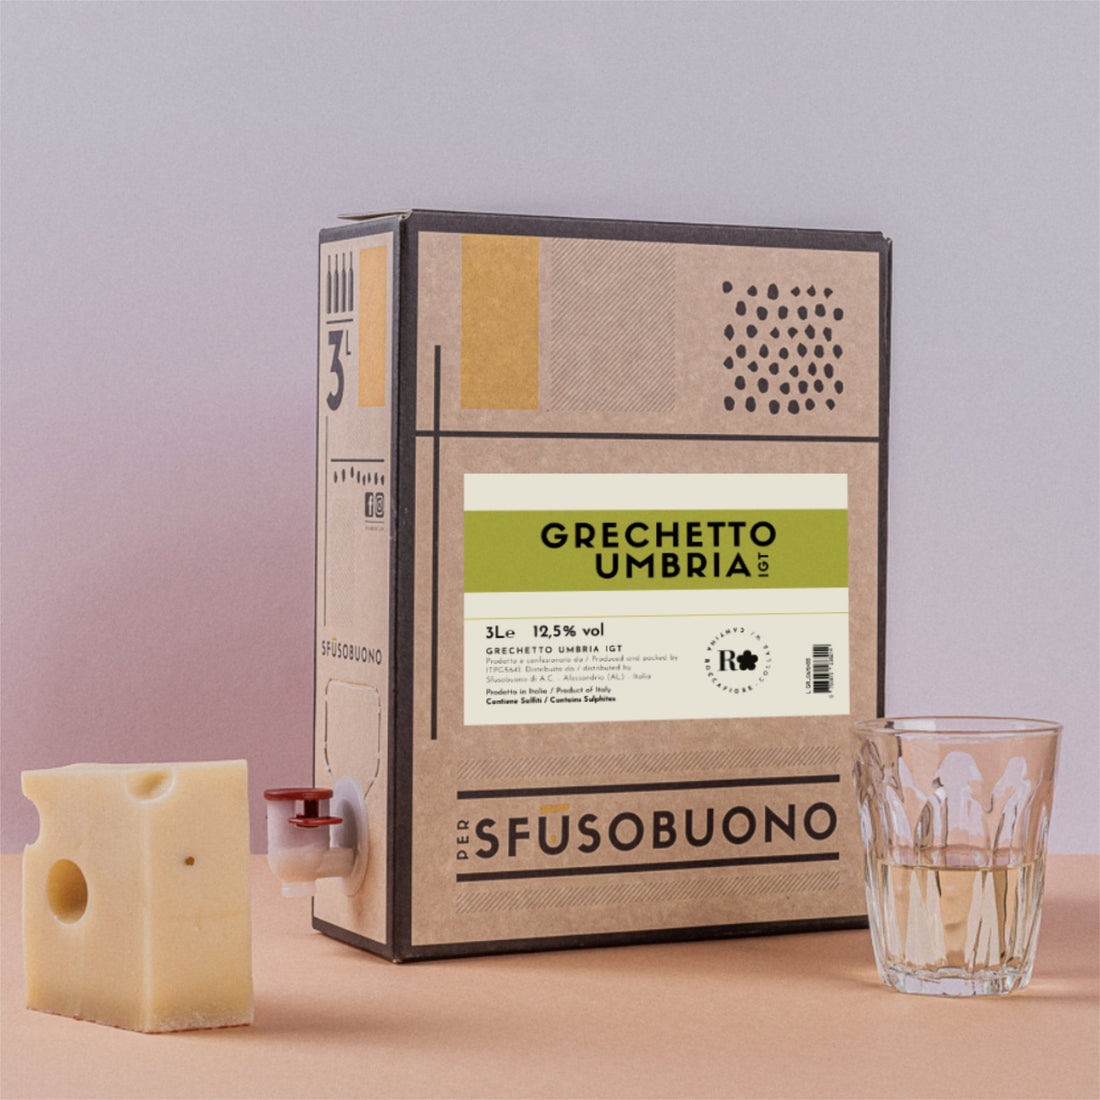 Grechetto Umbria IGT 3L - Roccafiore - Bag in Box